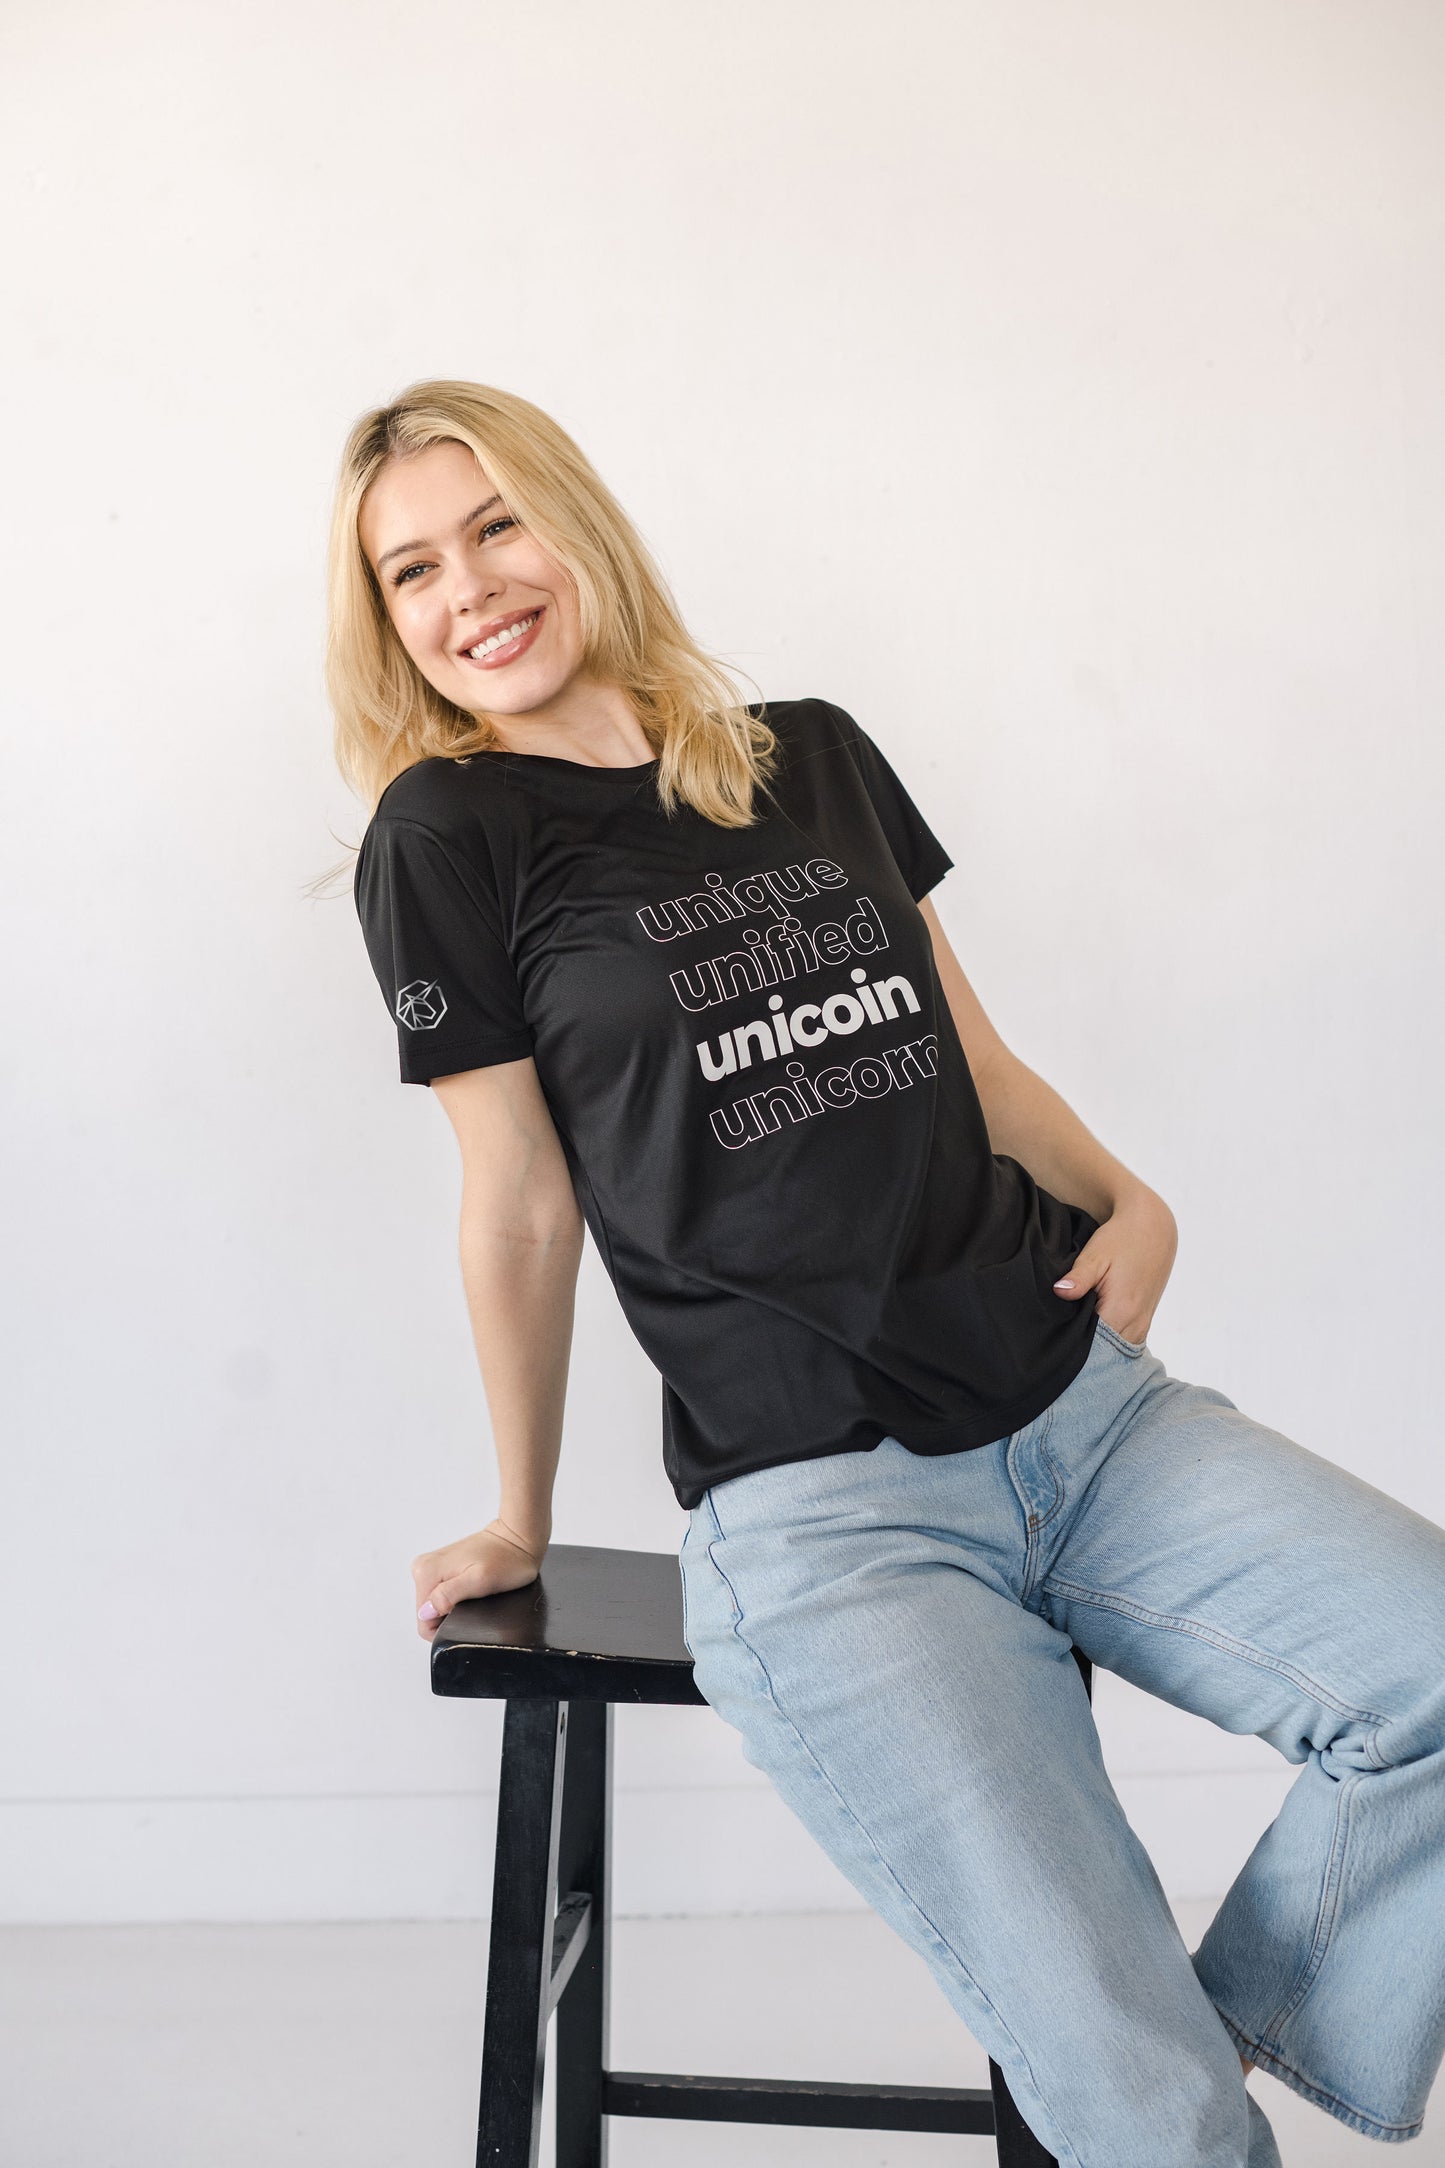 Unique, Unified, Unicoin, Unicorn T-Shirt